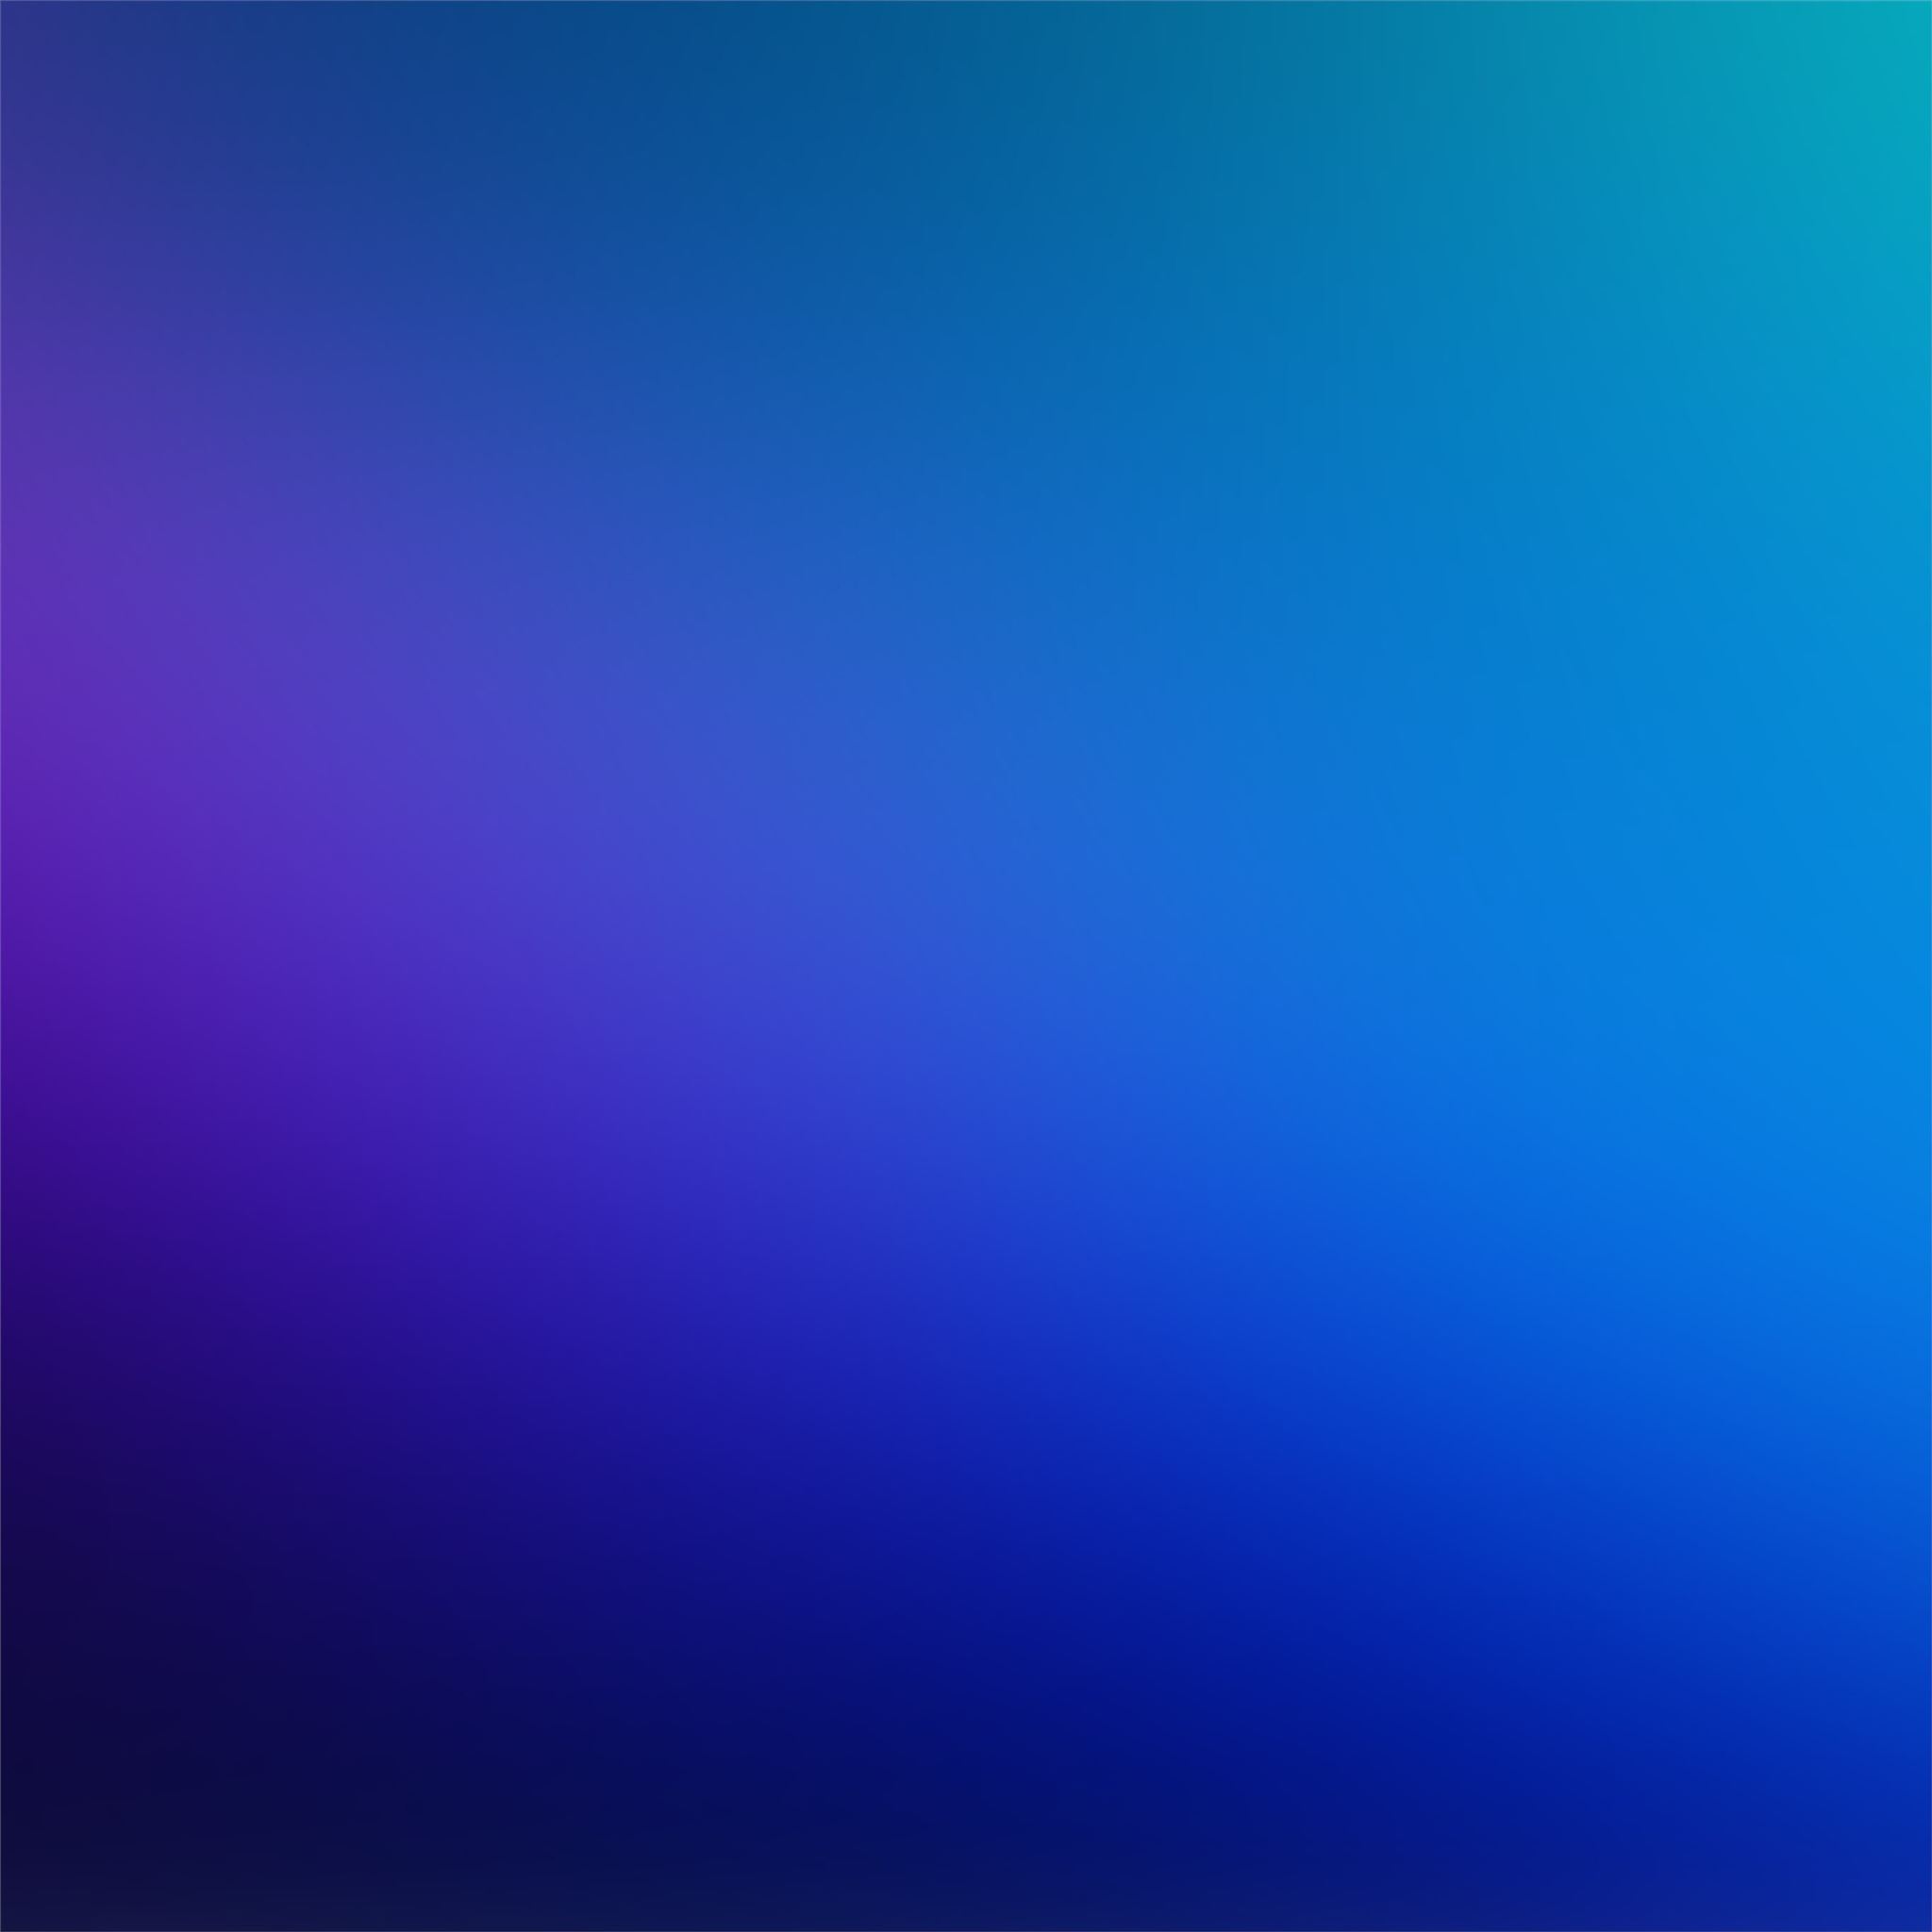 1600x1200 Blue-violet Solid Color Background